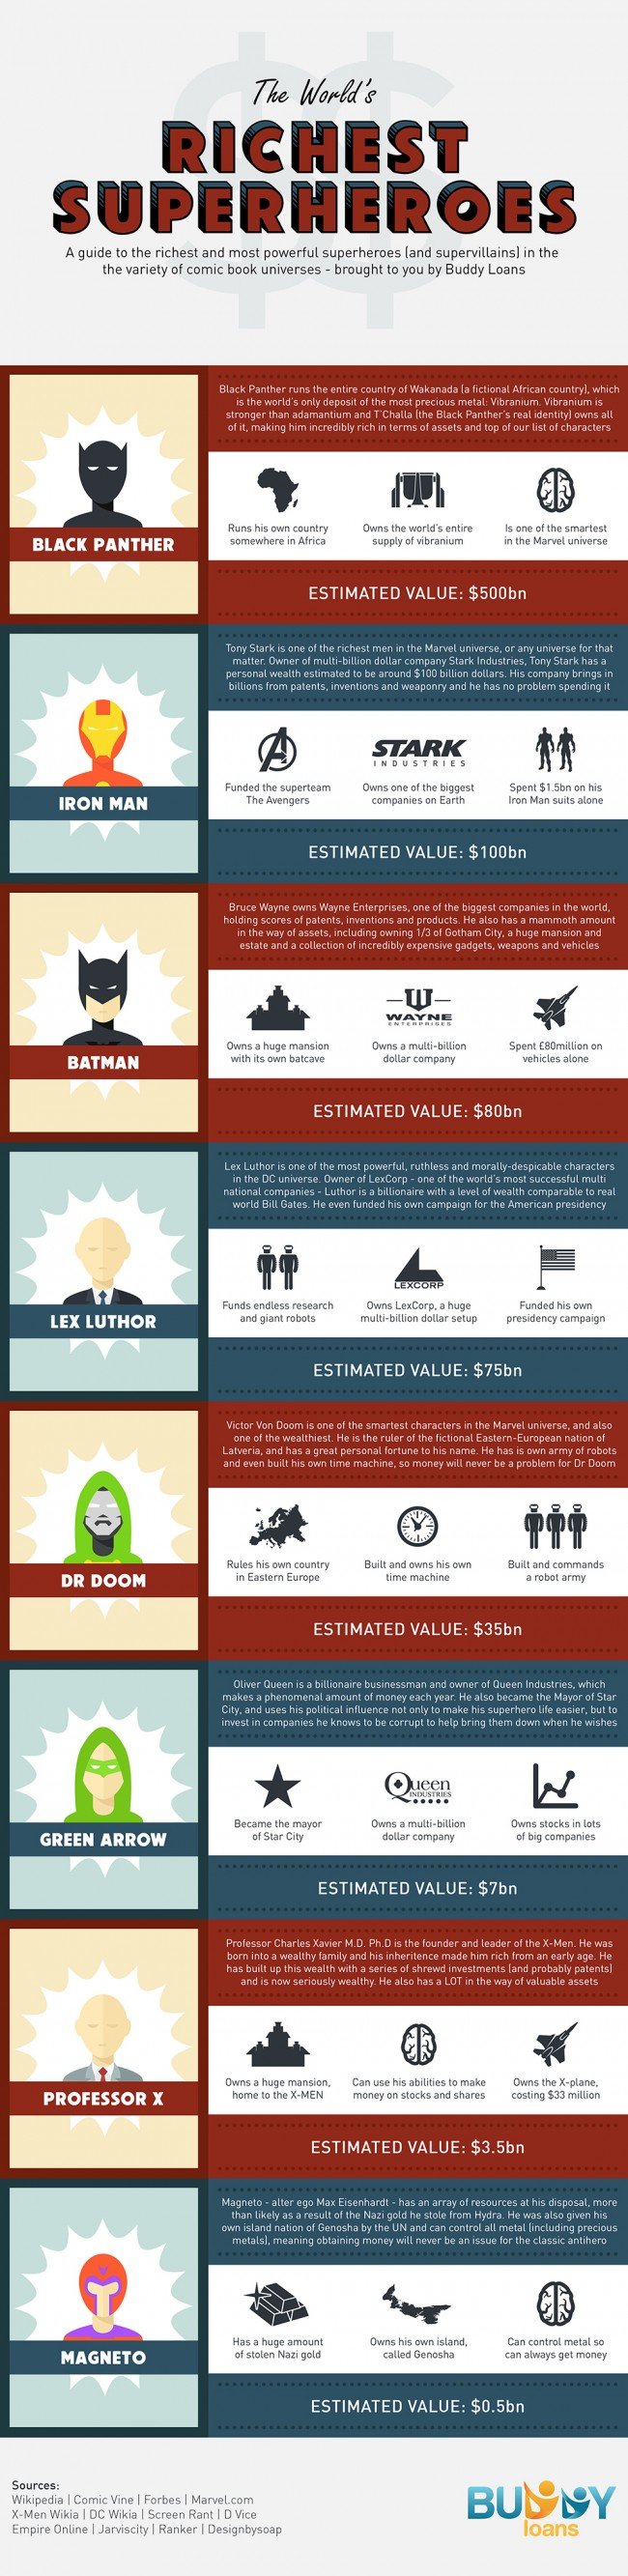 richest superheroes 650x2666 Super héros : Qui sont les plus riches ?